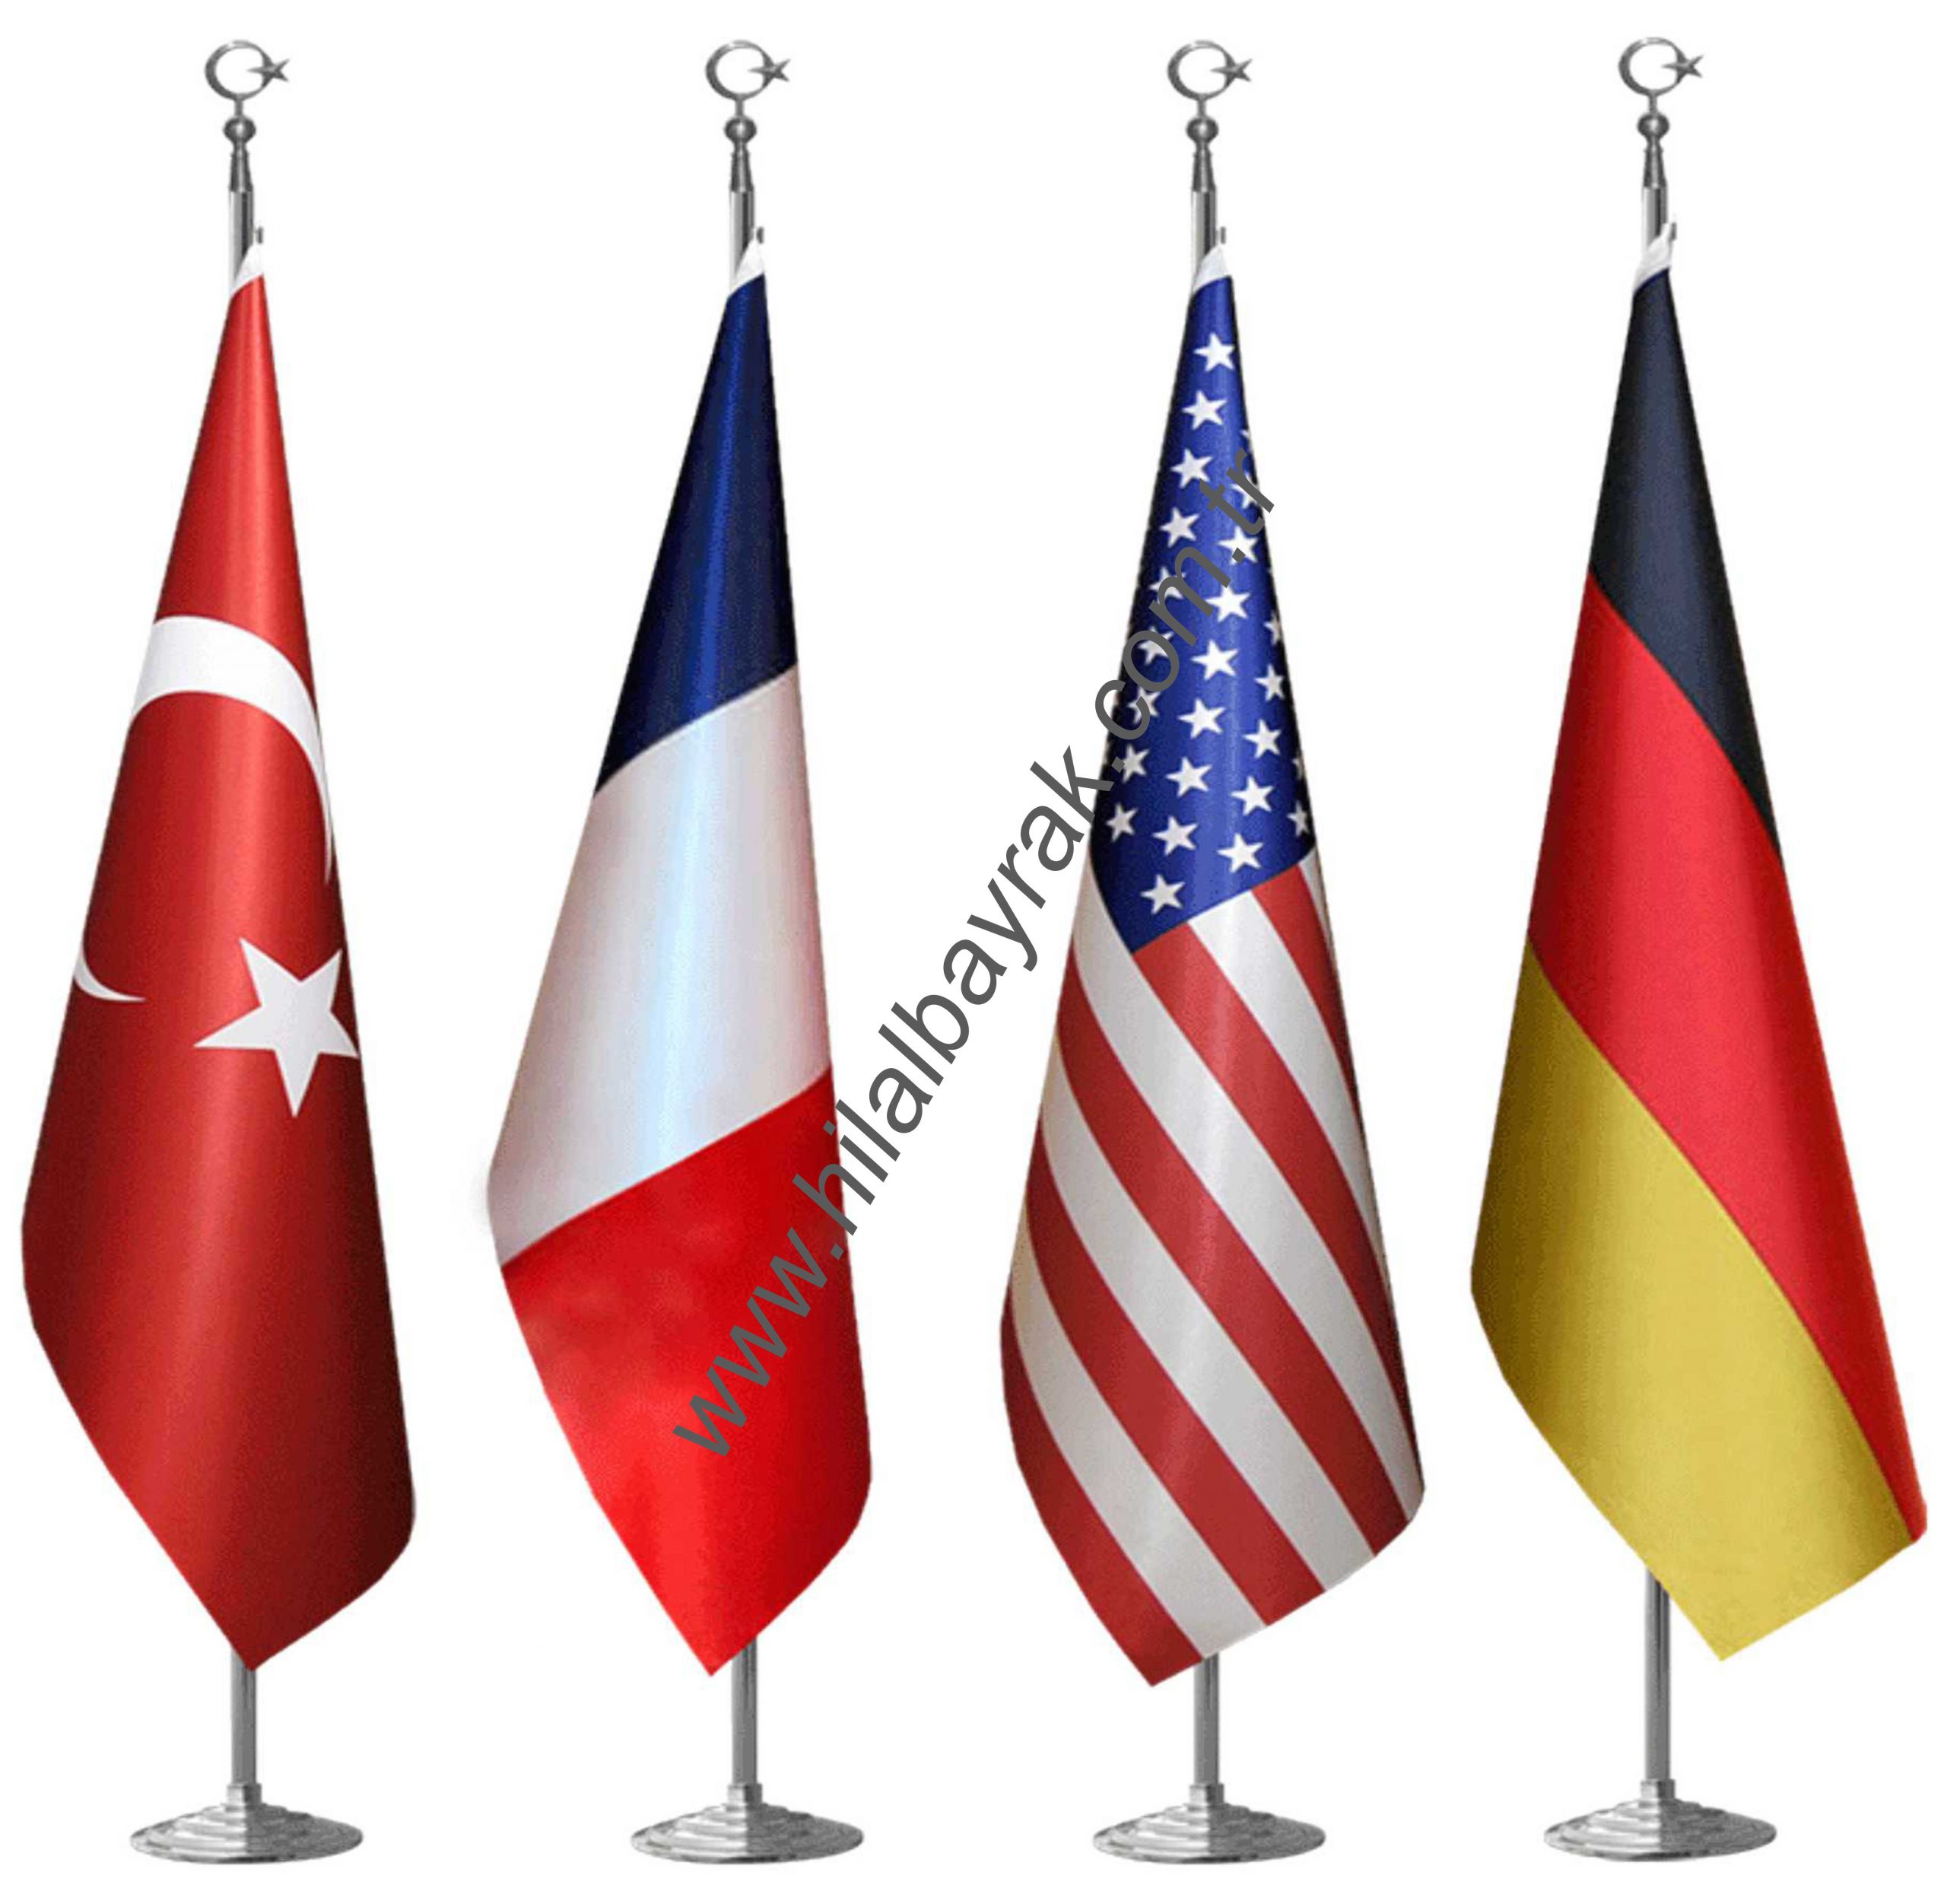 makam bayrağı, makam bayrak direği, makam bayrakları, makam bayrak, makam bayrağı fiyatı, makam bayrağı fiyatları, makam odası bayrağı, flama bayrak kadıköy, İstanbul,ACİL 7.24 SAAT AÇIK HİZMET